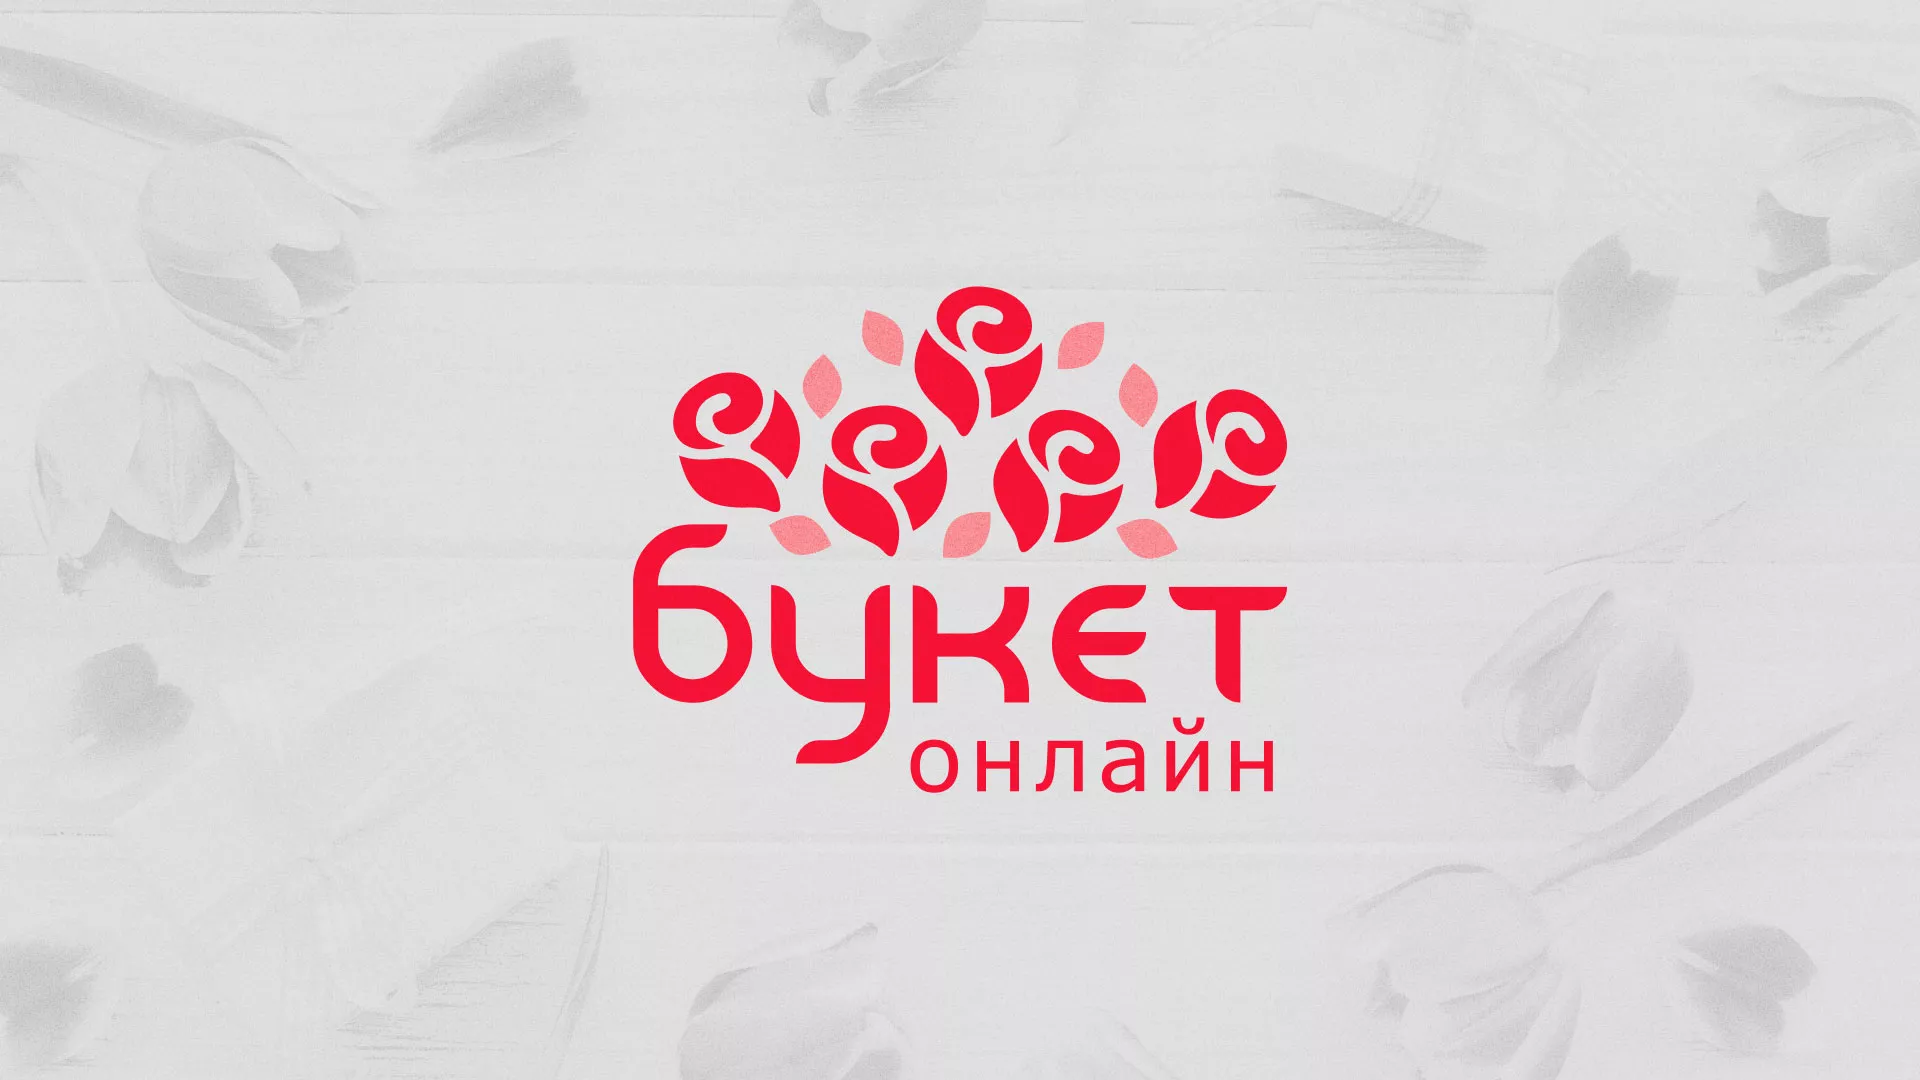 Создание интернет-магазина «Букет-онлайн» по цветам в Кисловодске